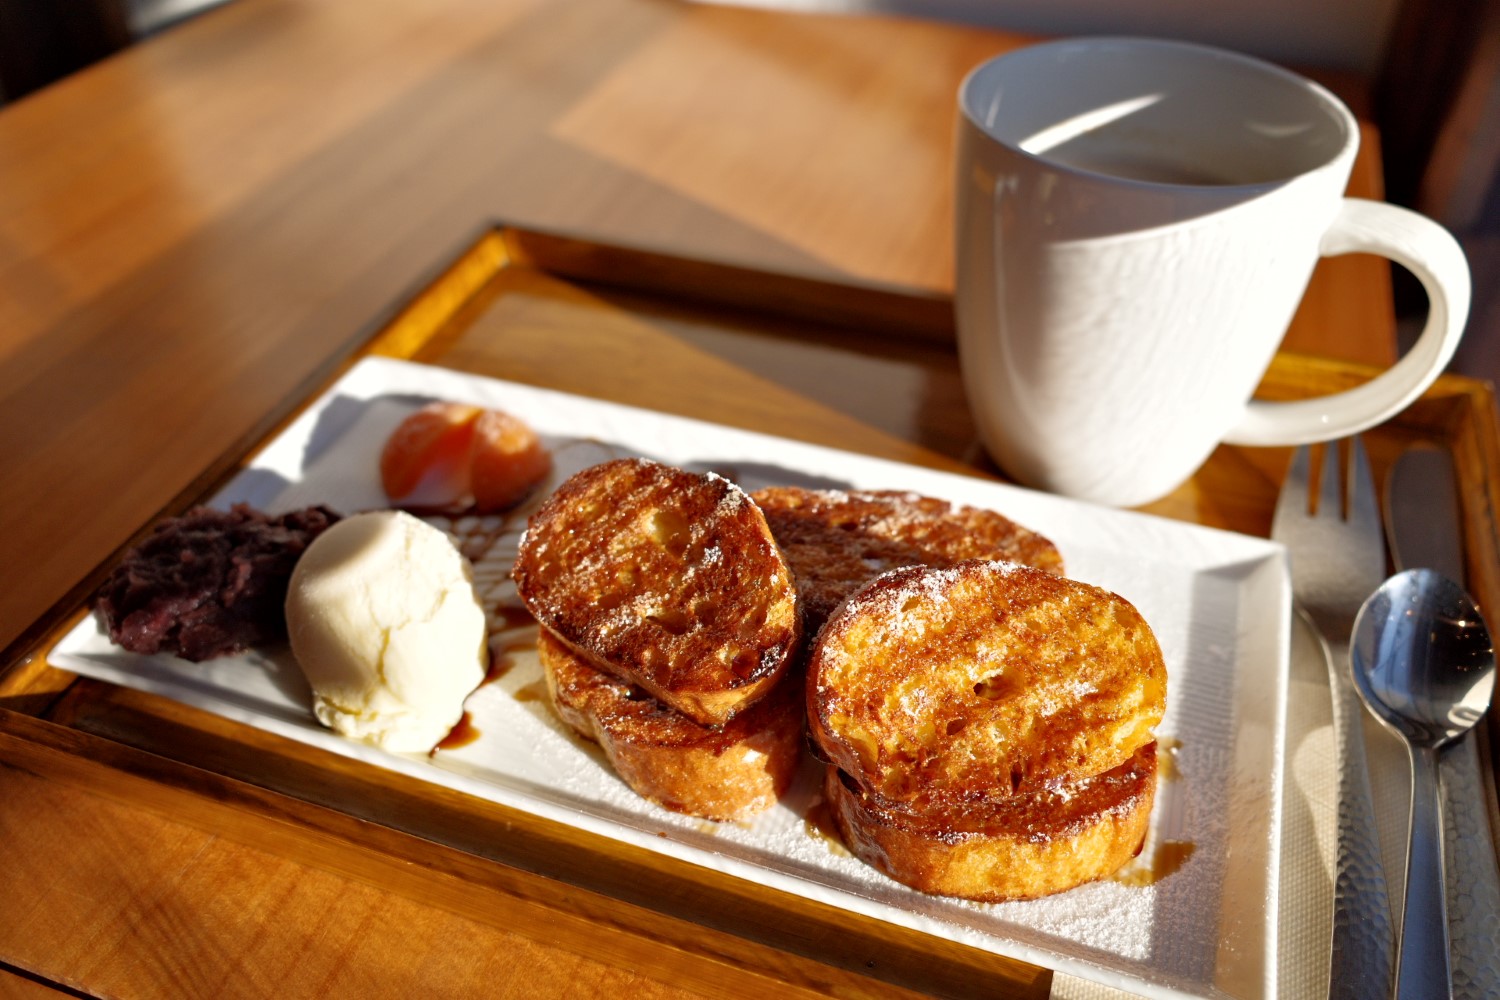 浅草フレンチトースト900円とサイフォンで淹れるコーヒー600円。セットで頼むと100円引きに。